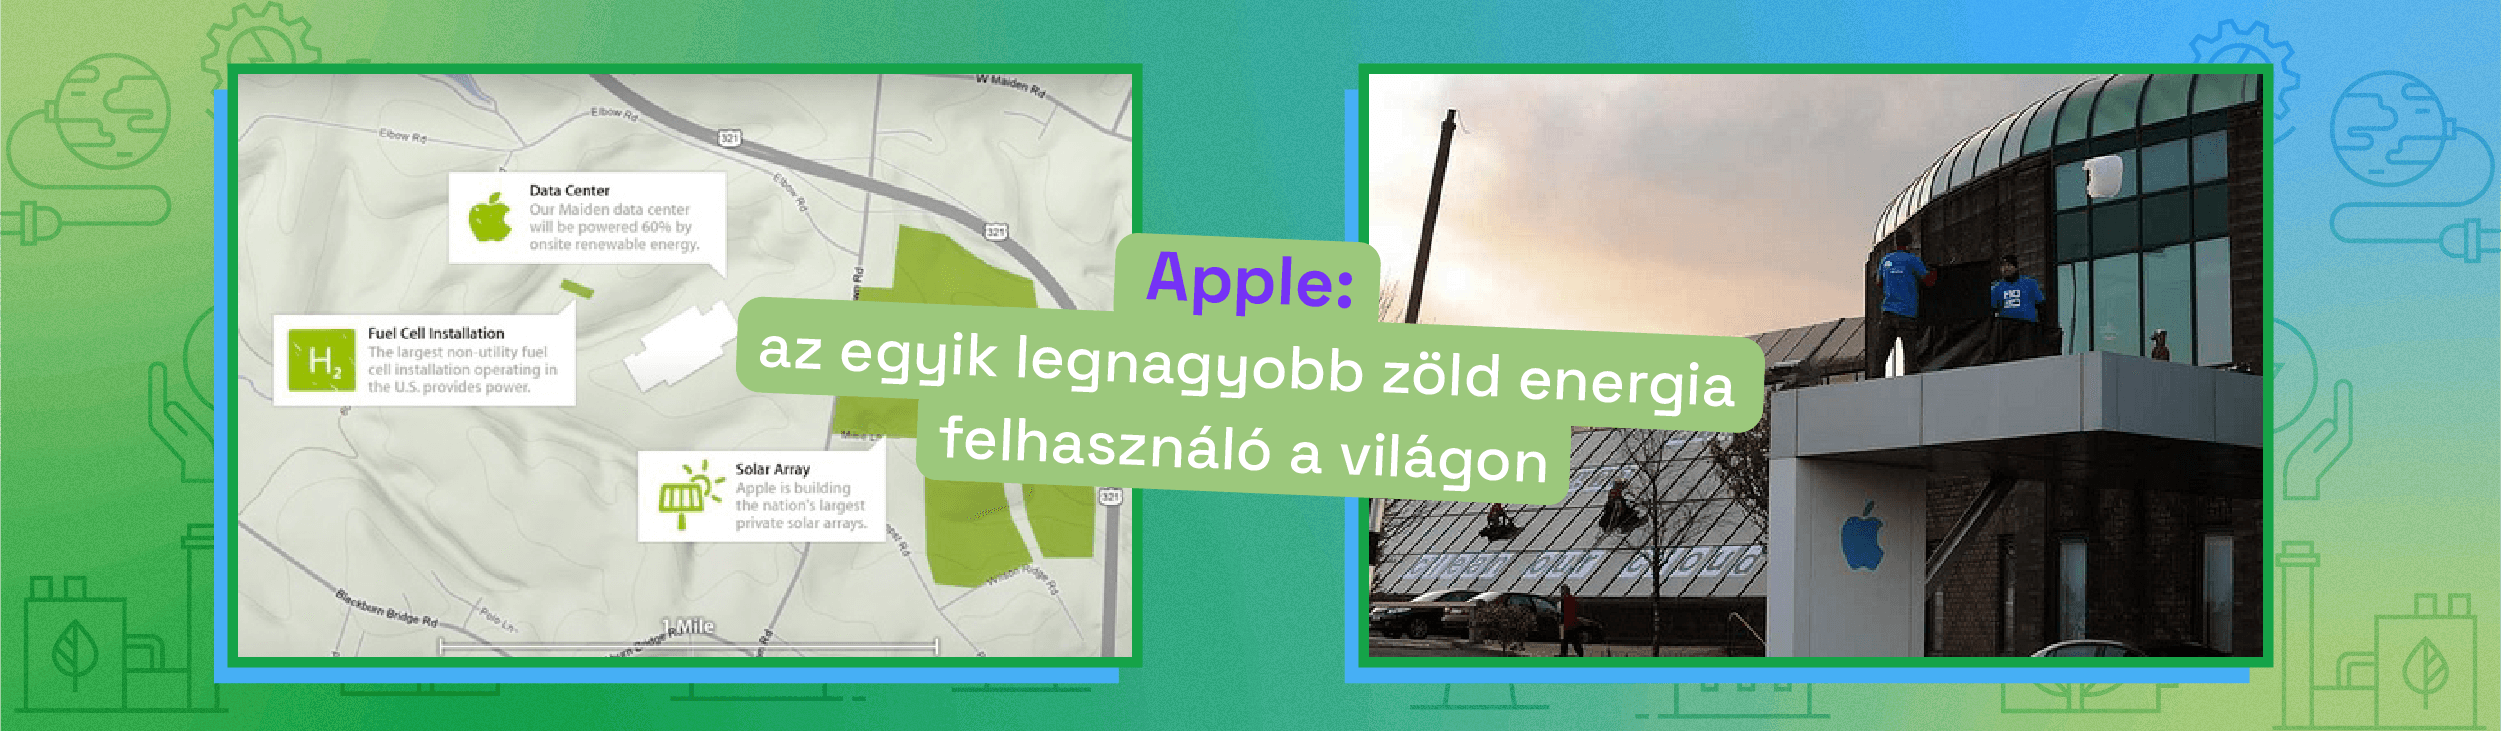 Apple: az egyik legnagyobb zöld energia felhasználó a világon